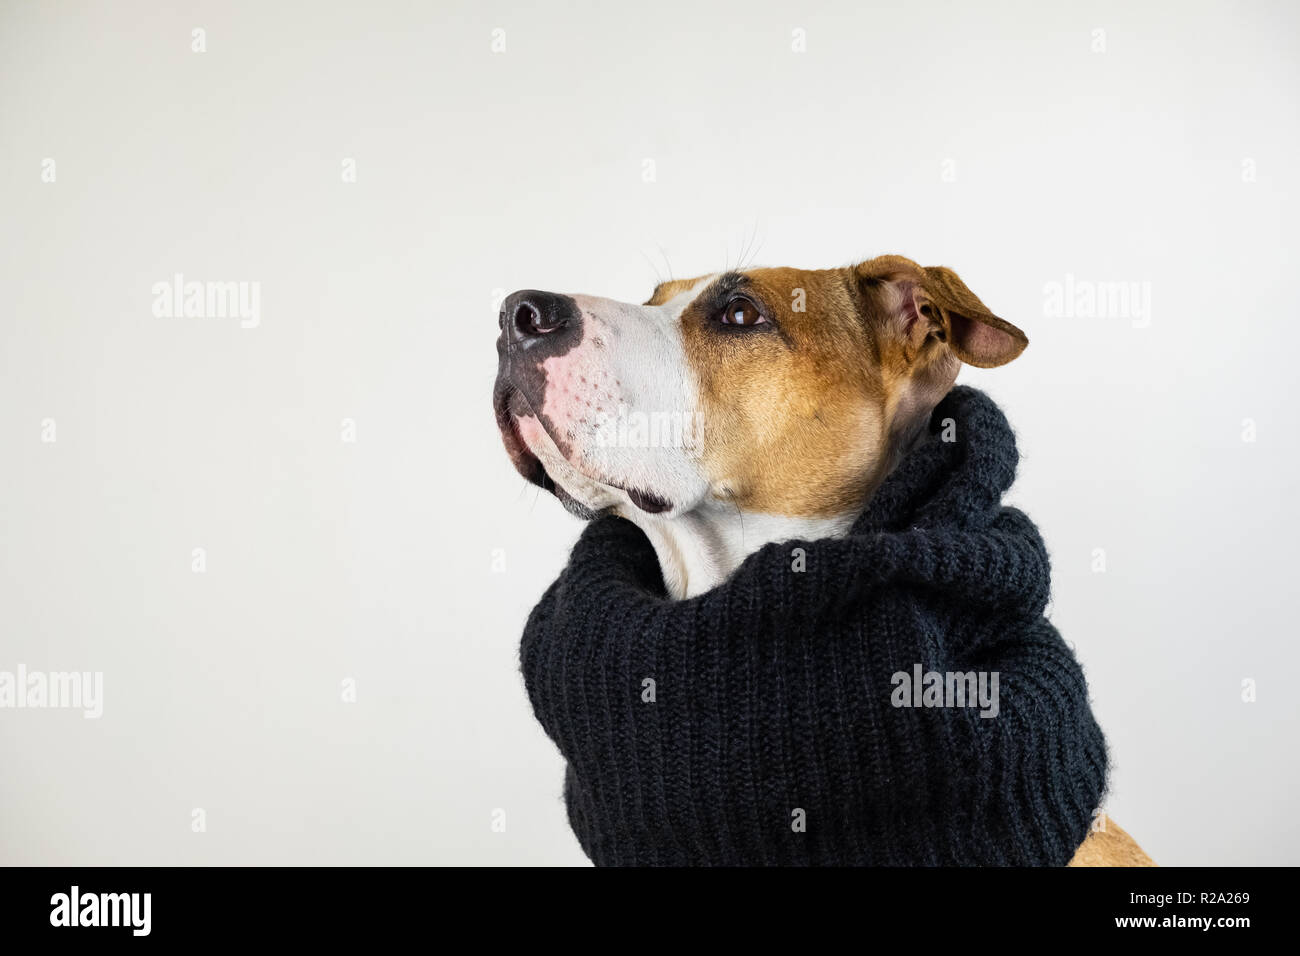 Hund in warme Kleidung Konzept. Cute pitbull Welpen in schwarz Schal im Studio Hintergrund, mit Kopie Raum Stockfoto